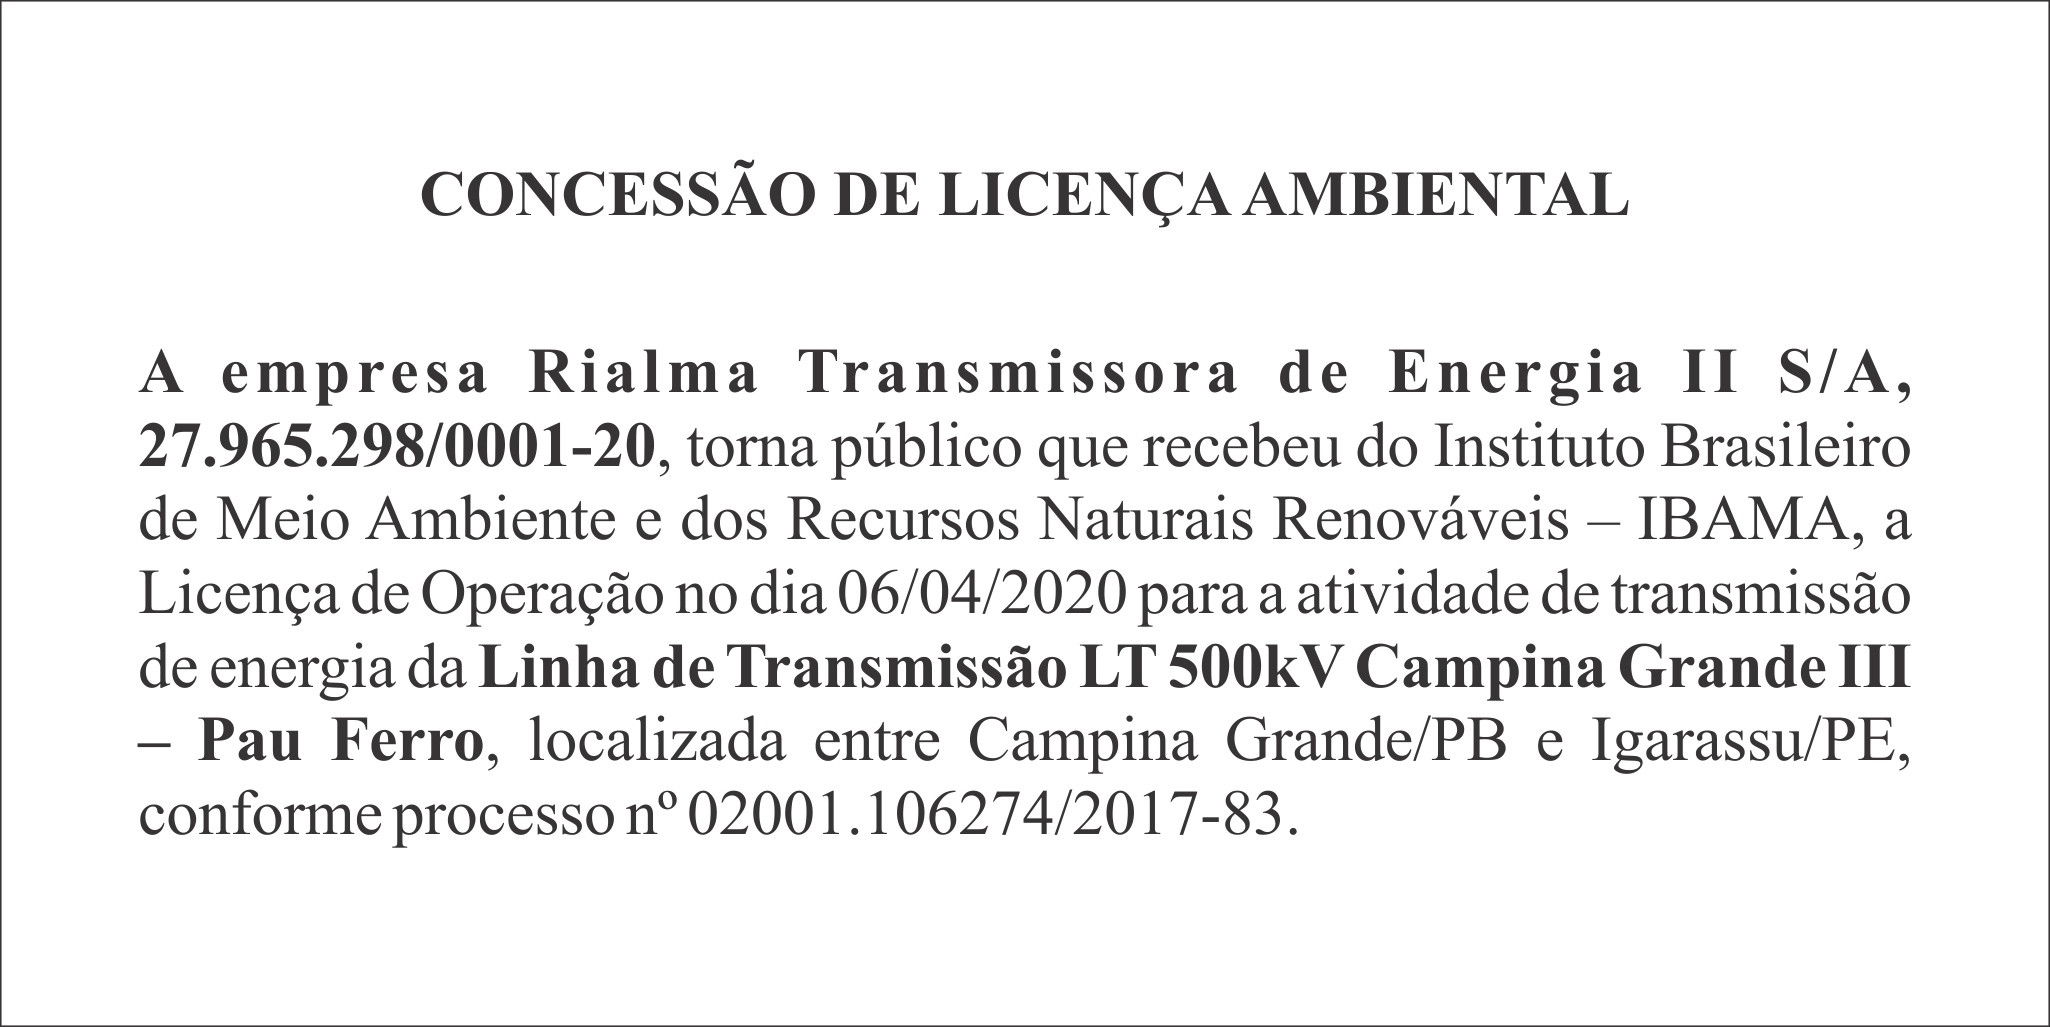 RIALMA TRANSMISSORA DE ENERGIA II S/A – LICENÇA DE OPERAÇÃO